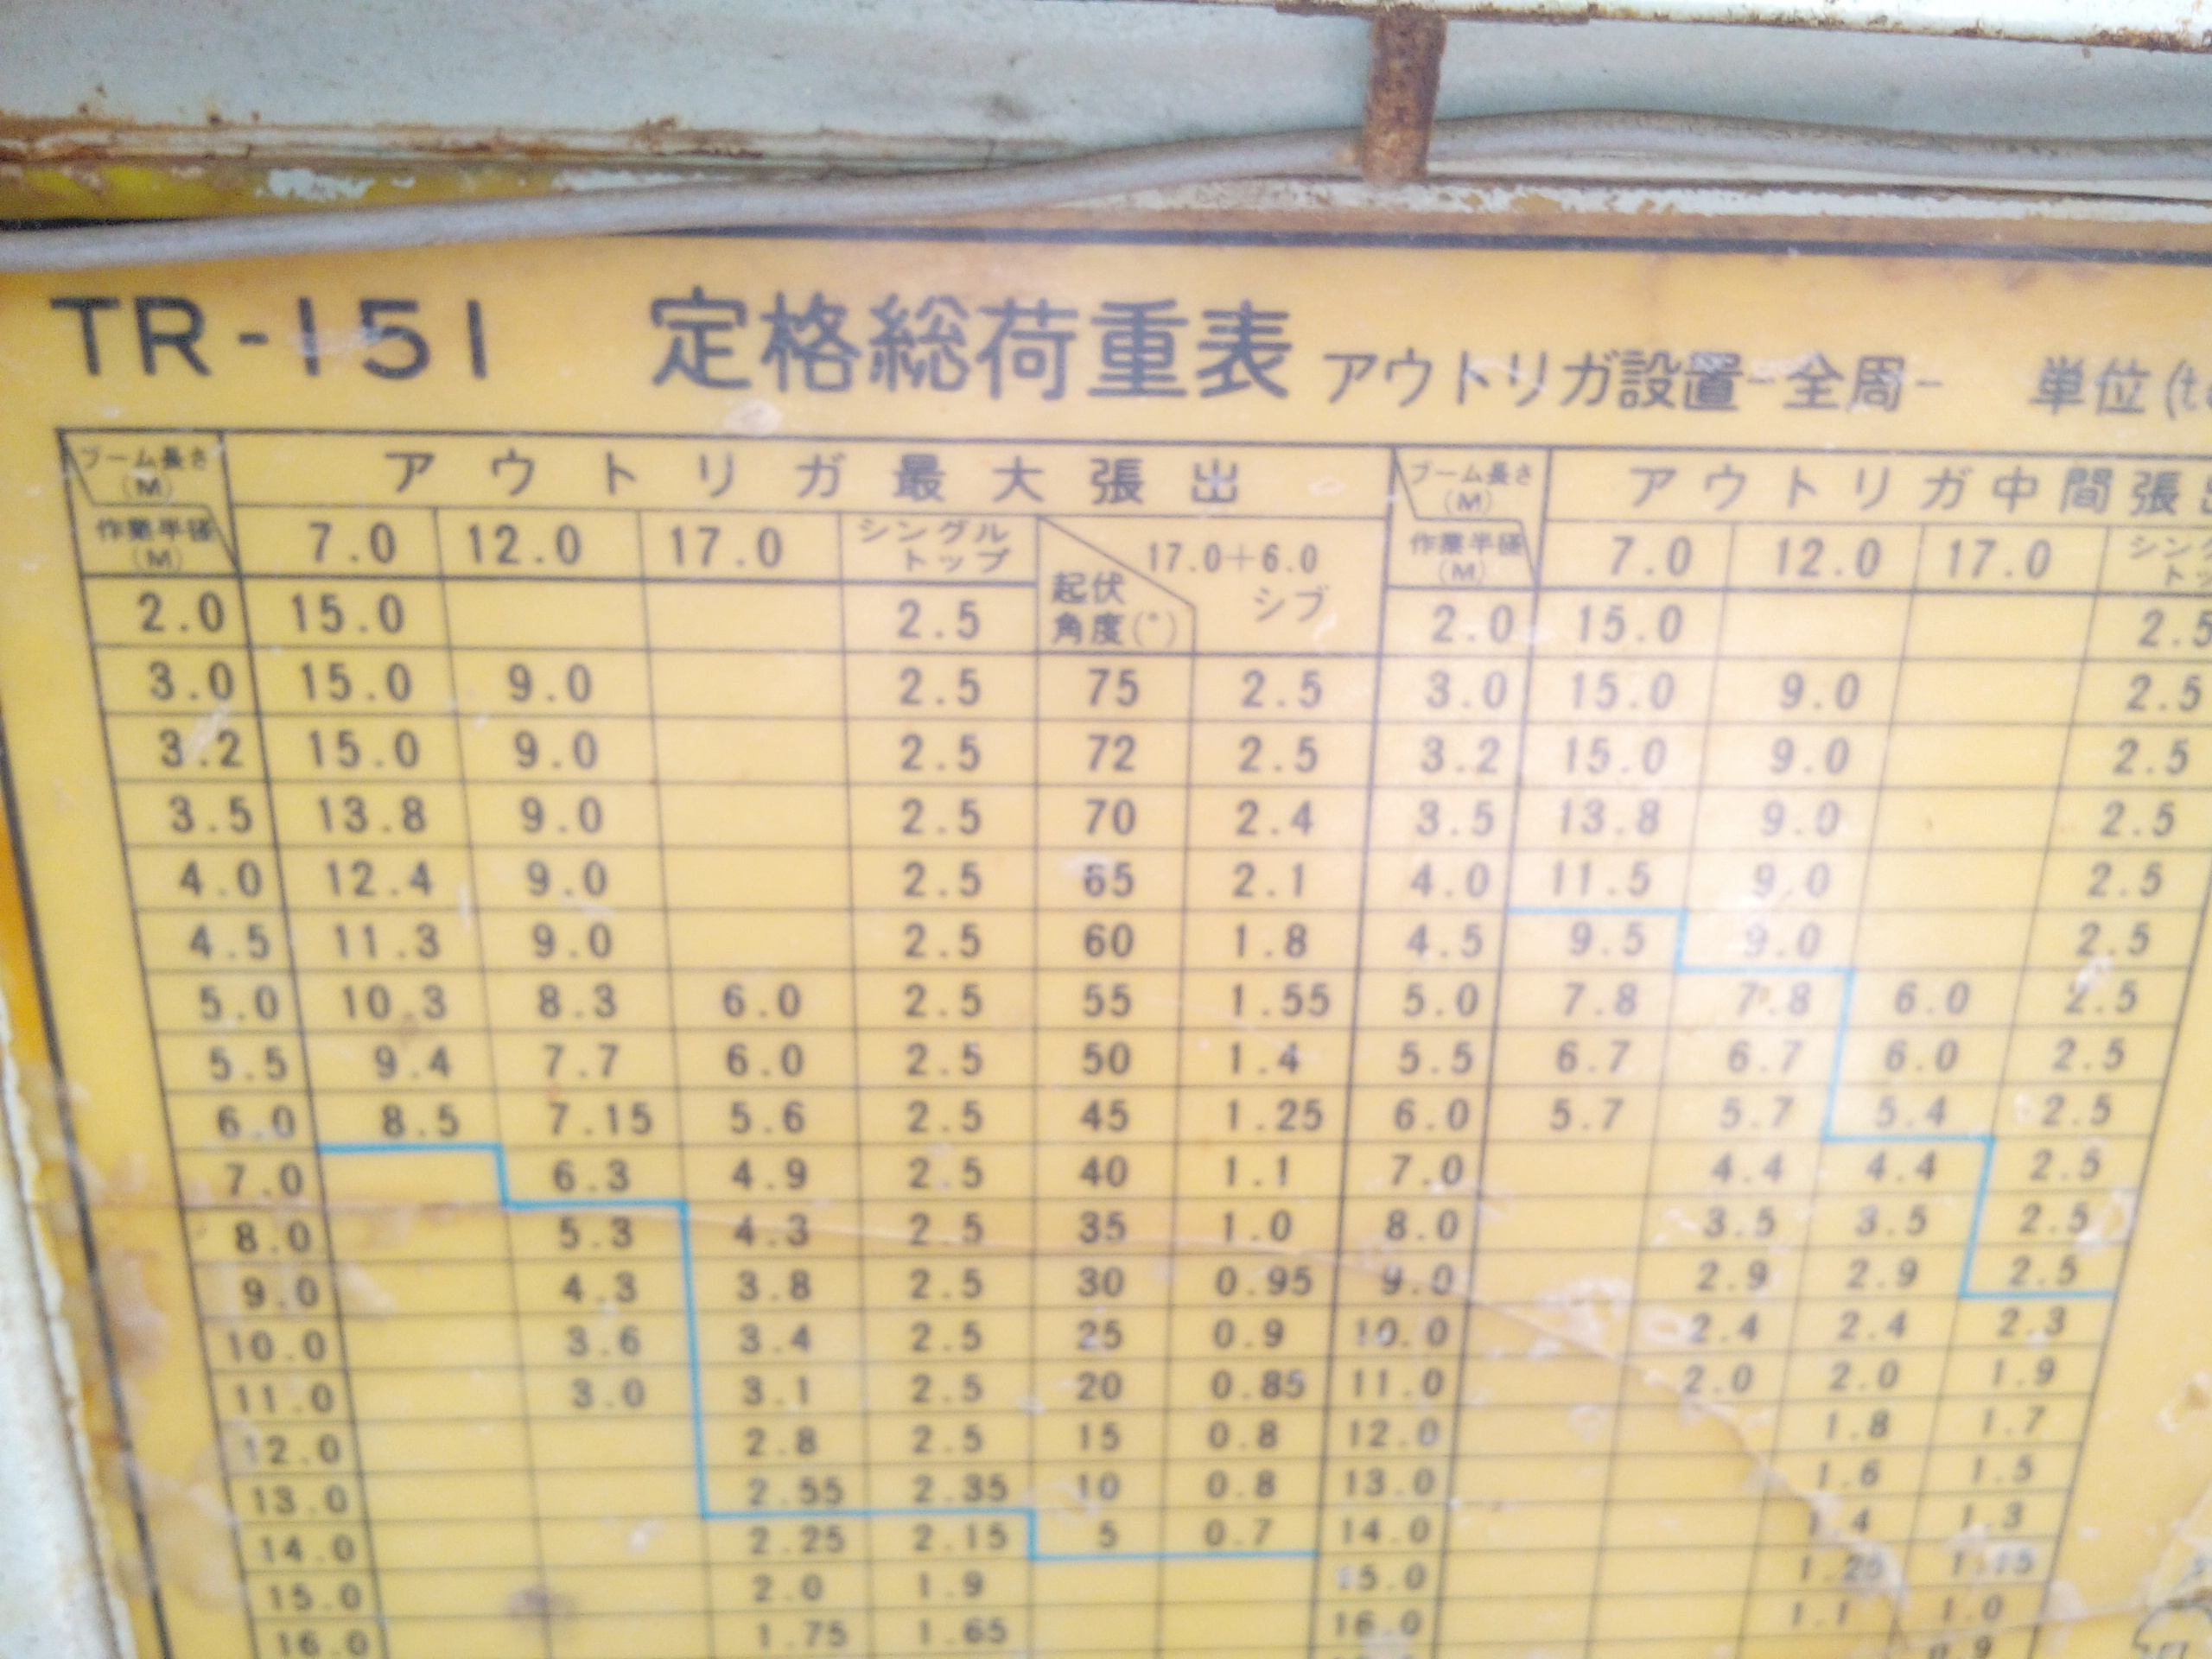 30 Ton Tadano Load Chart